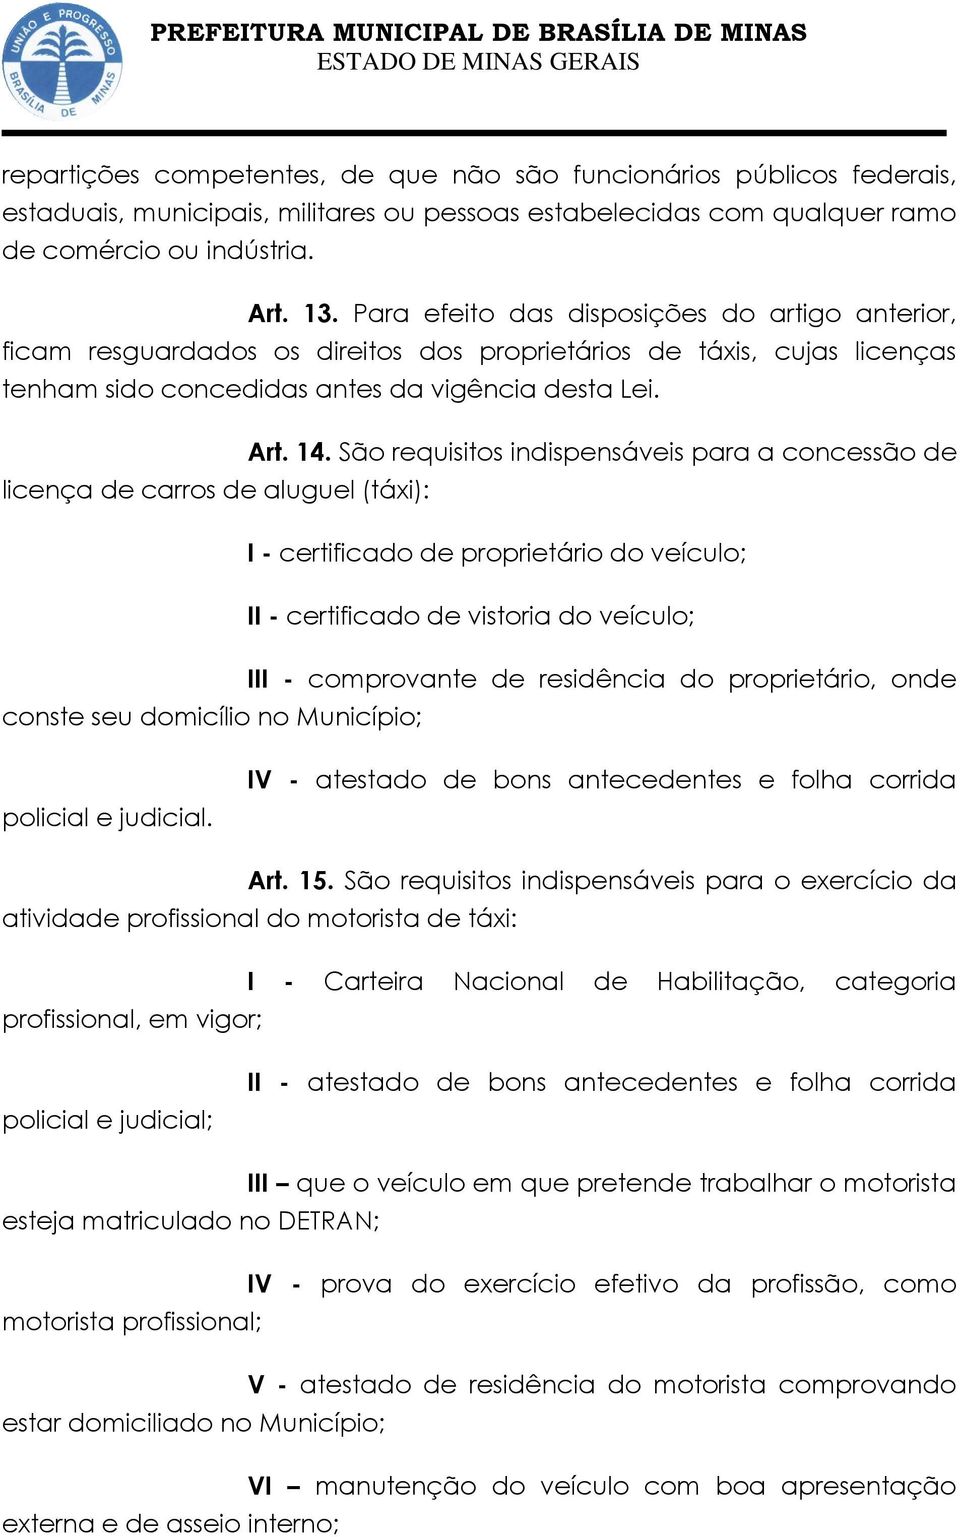 São requisitos indispensáveis para a concessão de licença de carros de aluguel (táxi): I - certificado de proprietário do veículo; II - certificado de vistoria do veículo; III - comprovante de